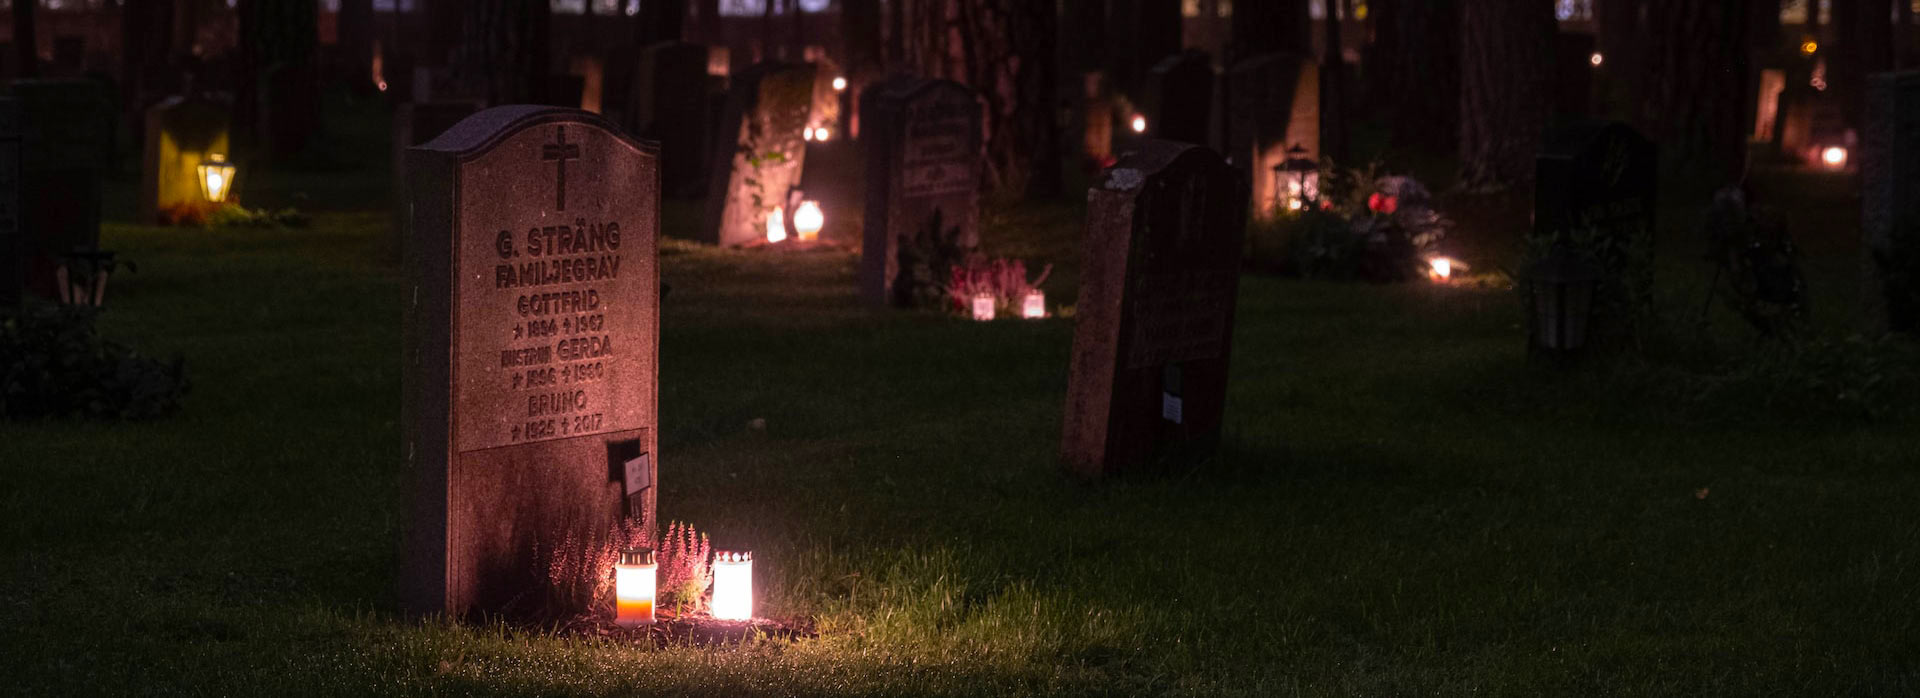 Un cimetière la nuit éclairé par des bougies